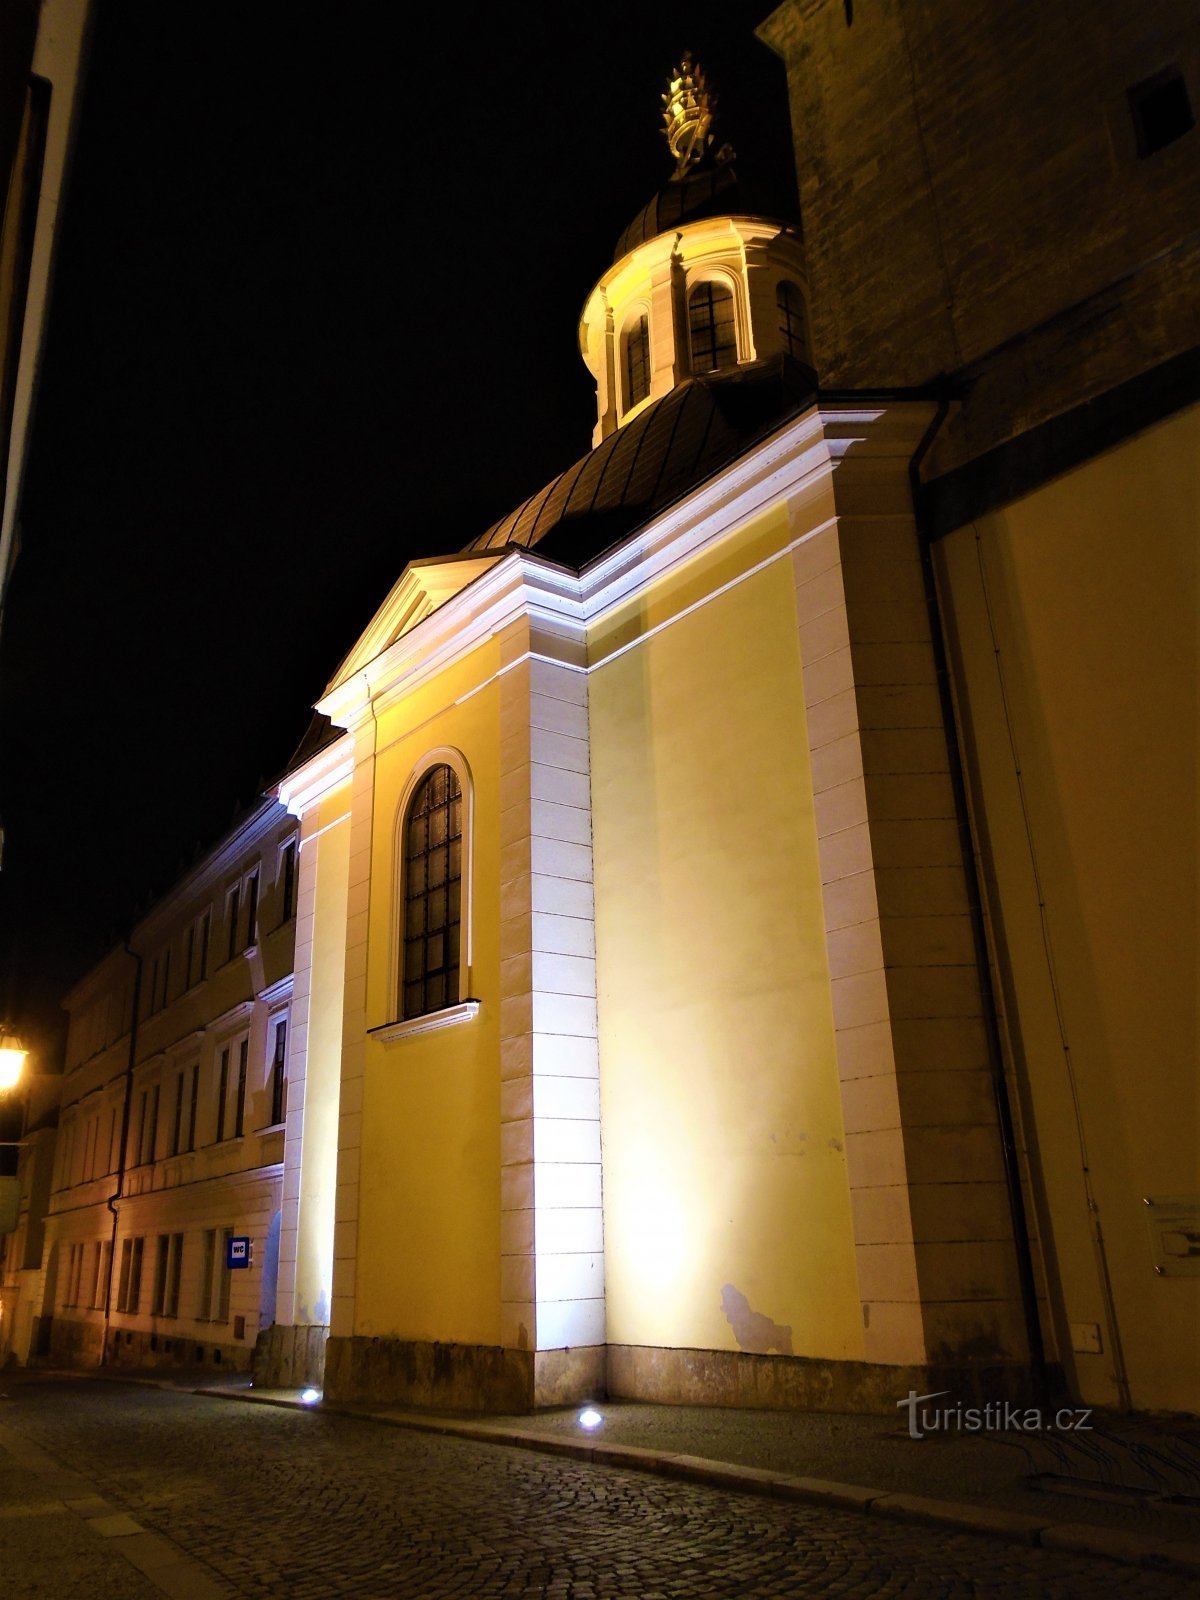 Chapel of St. Klement, Pope and Martyr (Hradec Králové, 13.12.2020/XNUMX/XNUMX)